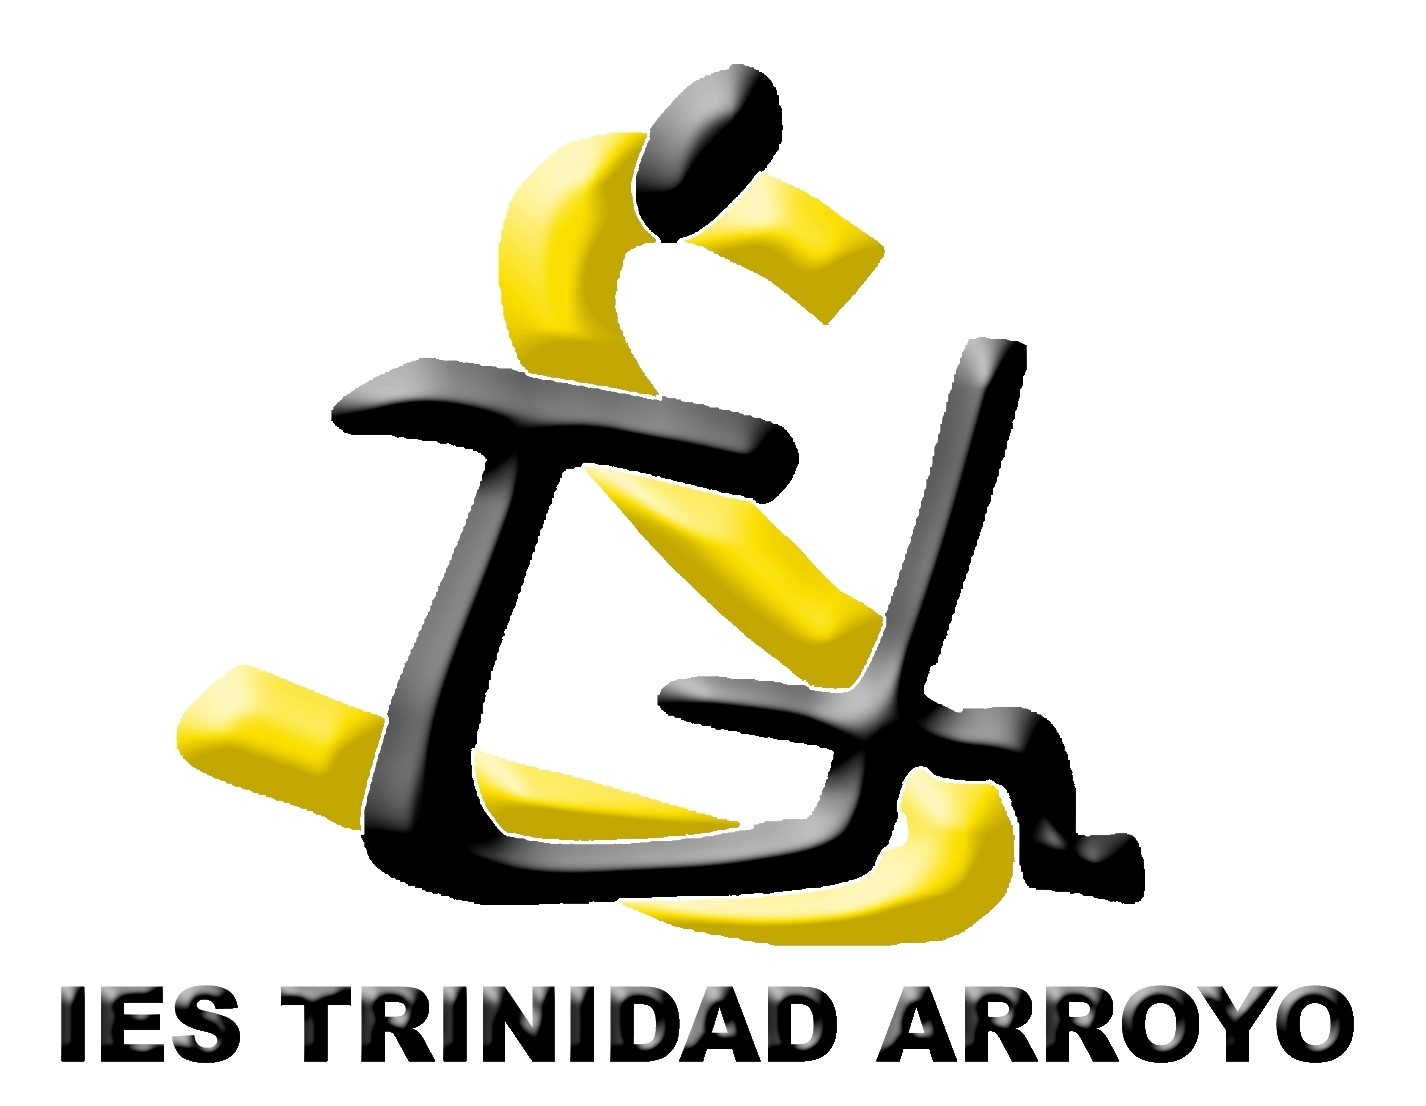 IES Trinidad Arroyo